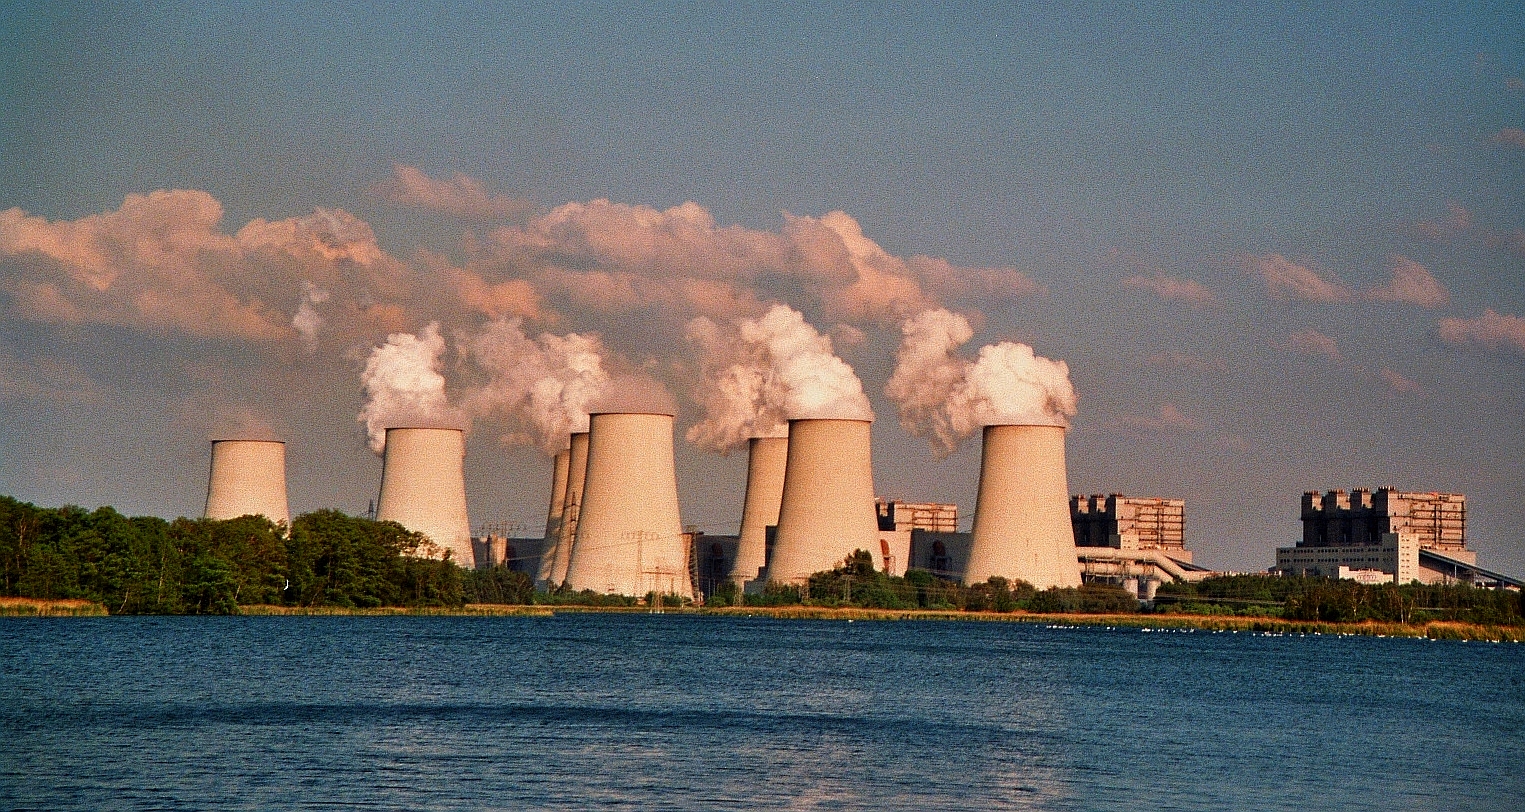 Addio al carbone: la Germania posticipa di 1 anno lo stop alle centrali a lignite